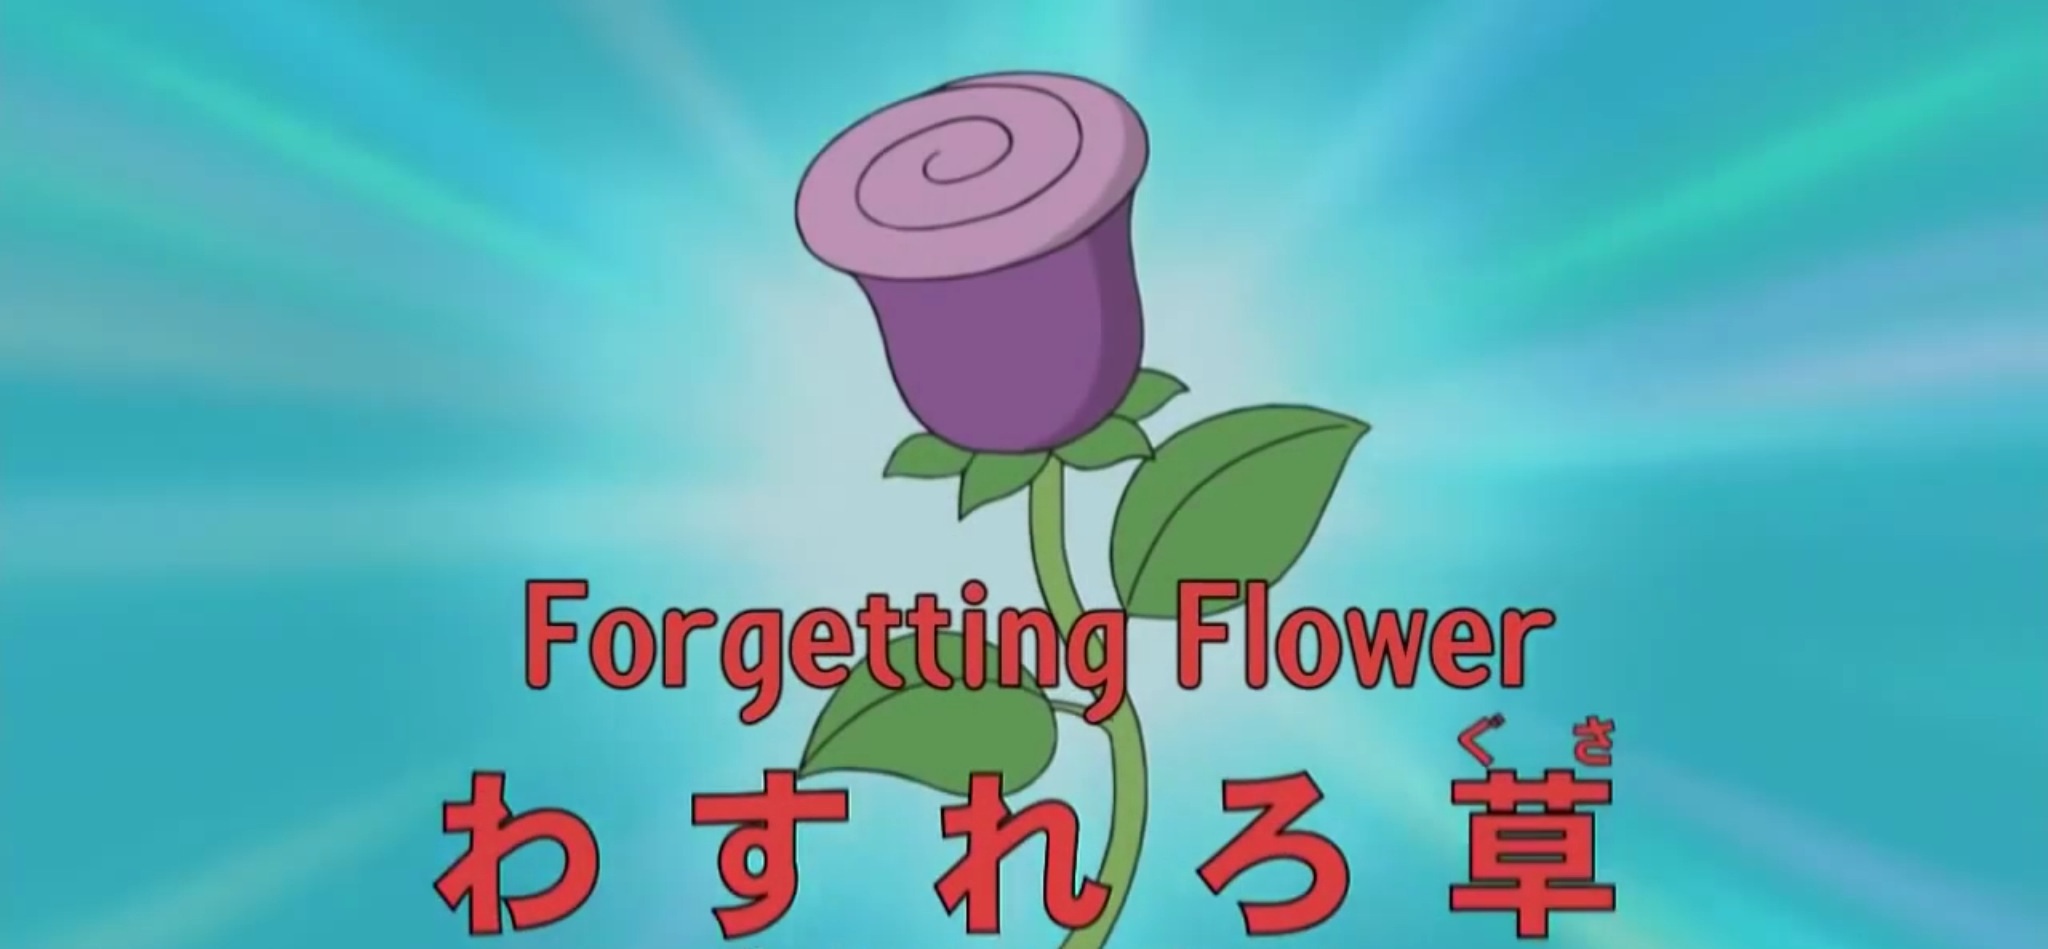 Forgetting Flower Doraemon Wiki Fandom